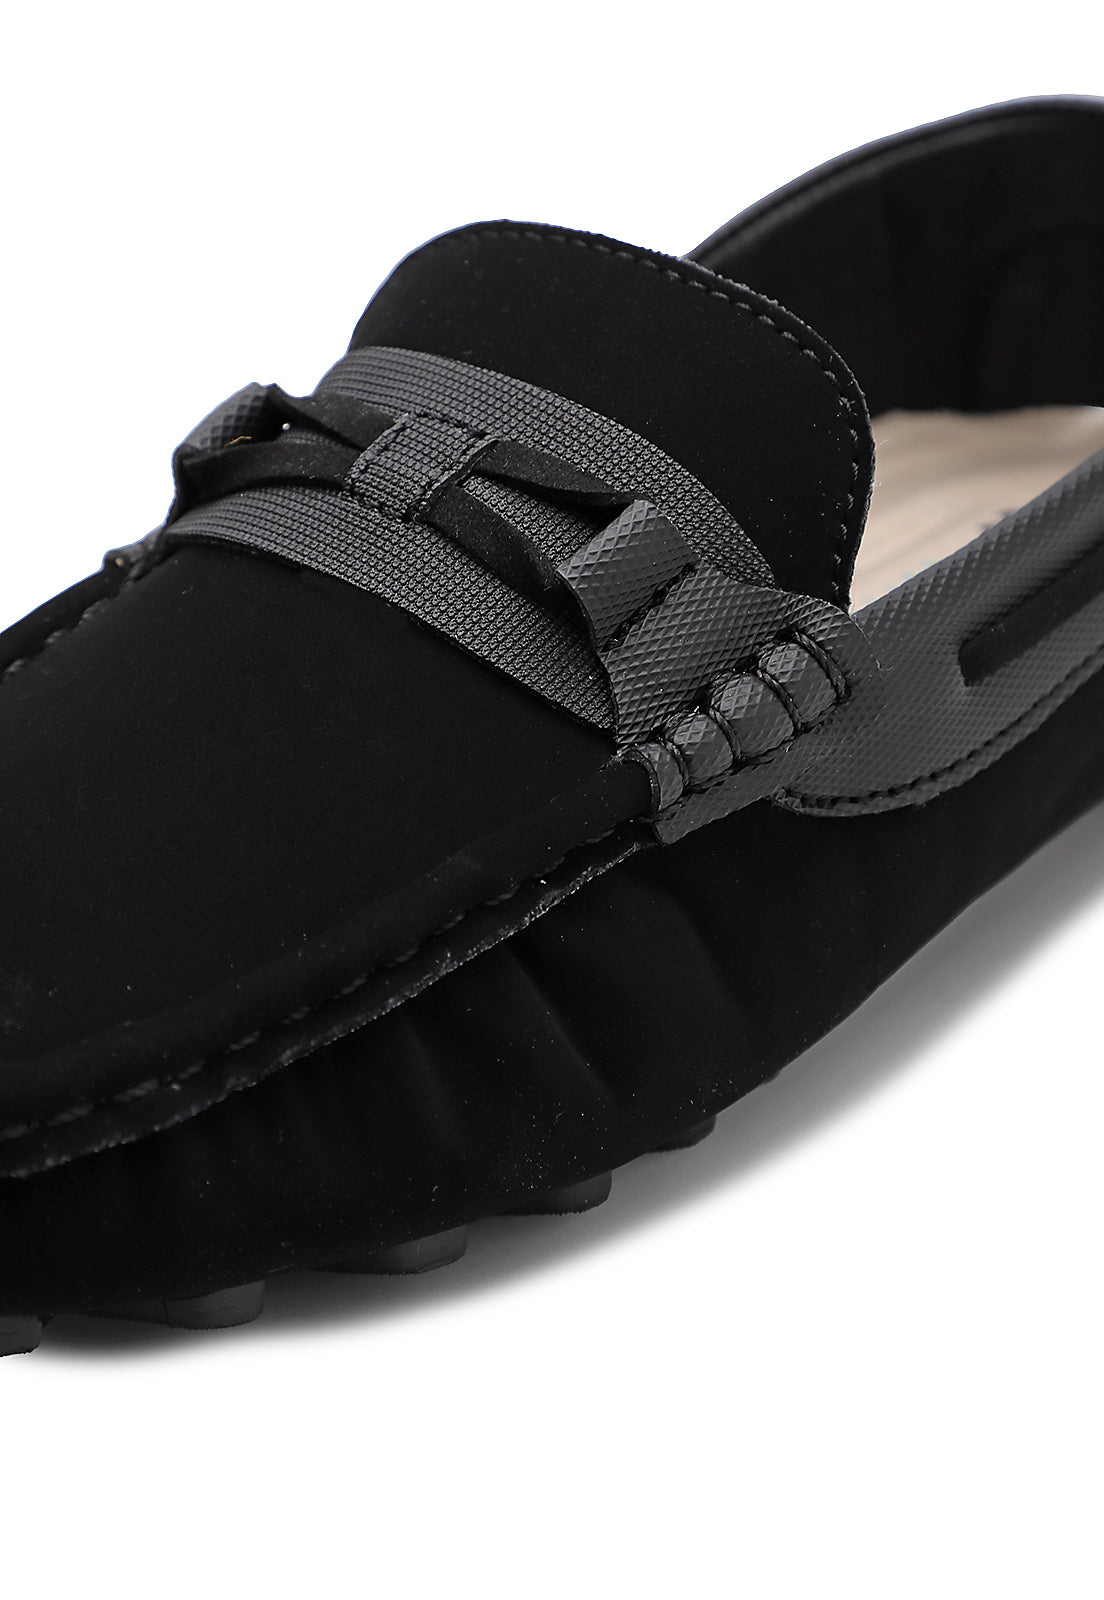 Zapato hombre tubular Negro Tellenzi 041